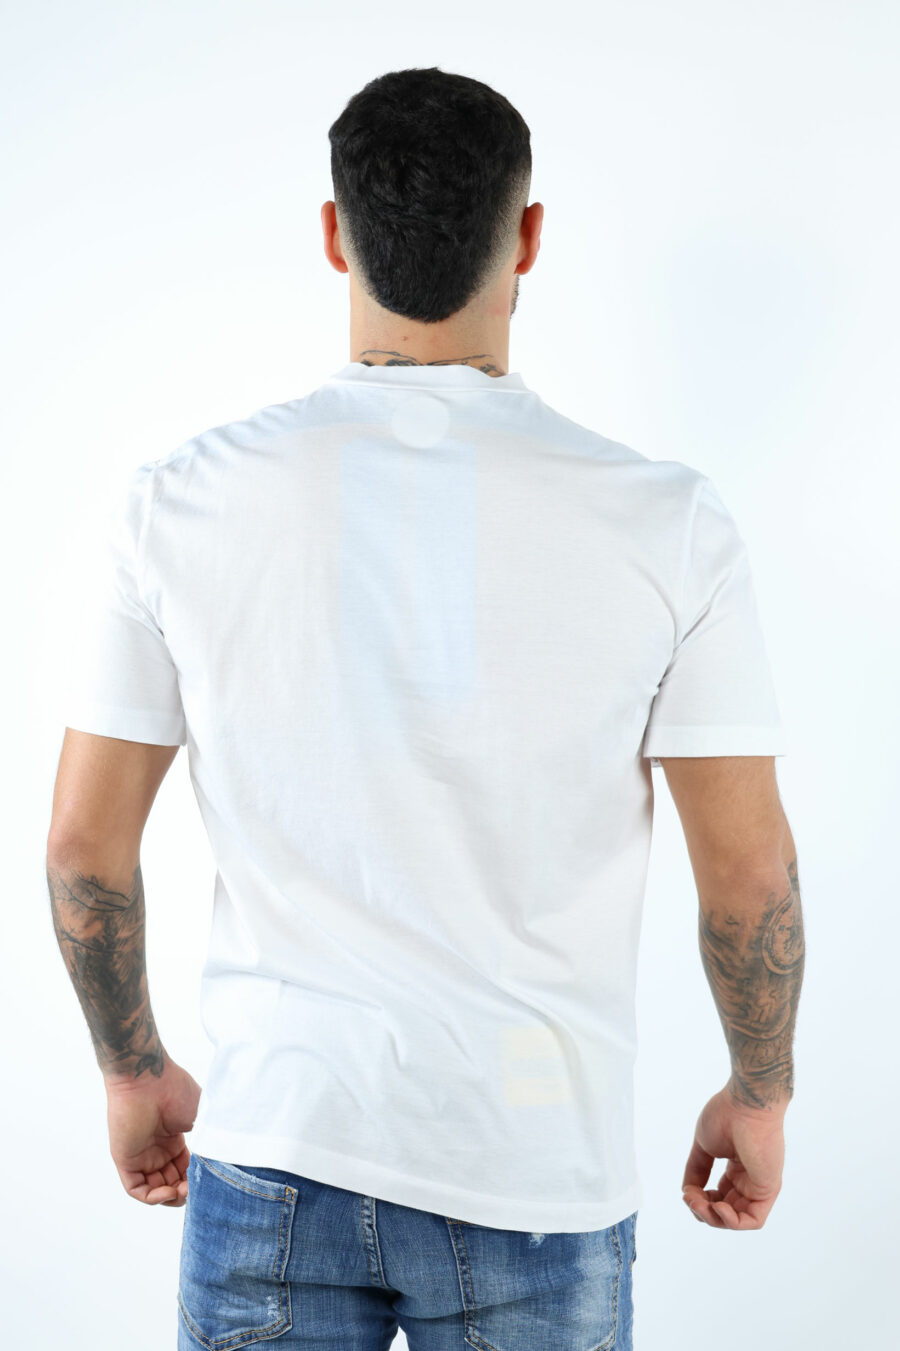 T-shirt blanc avec feuille monochrome en relief maxilogo - 106621